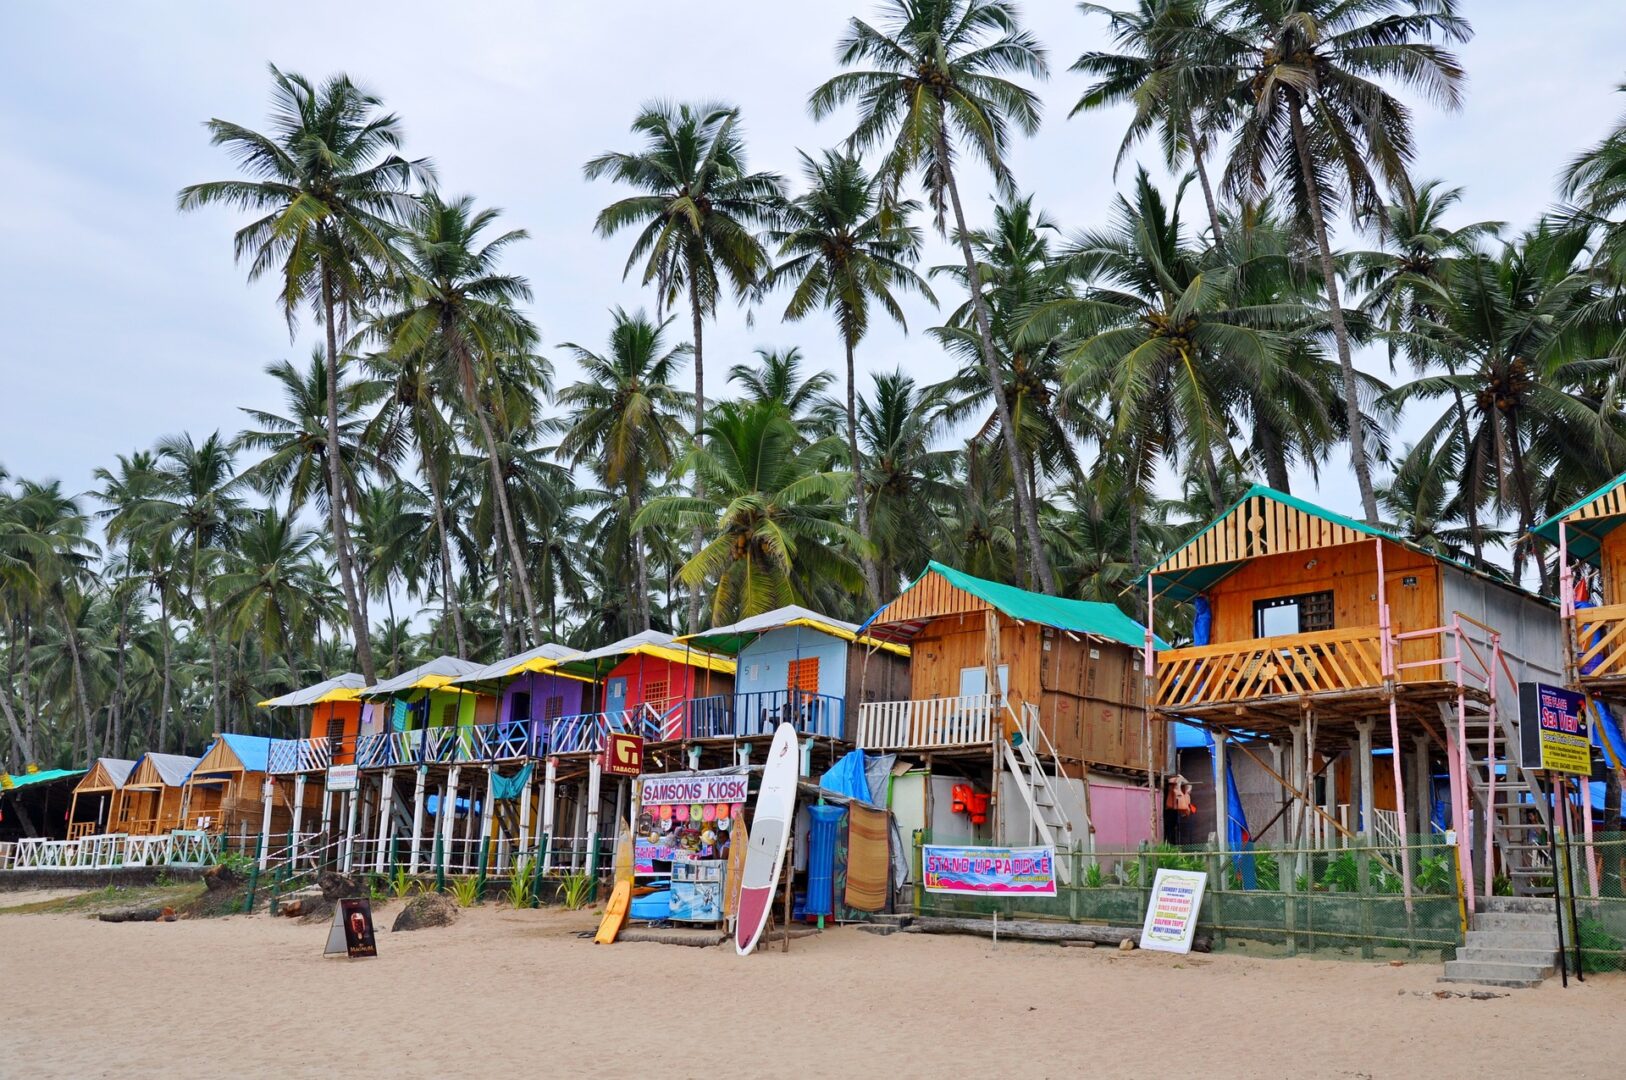  La plage de Goa